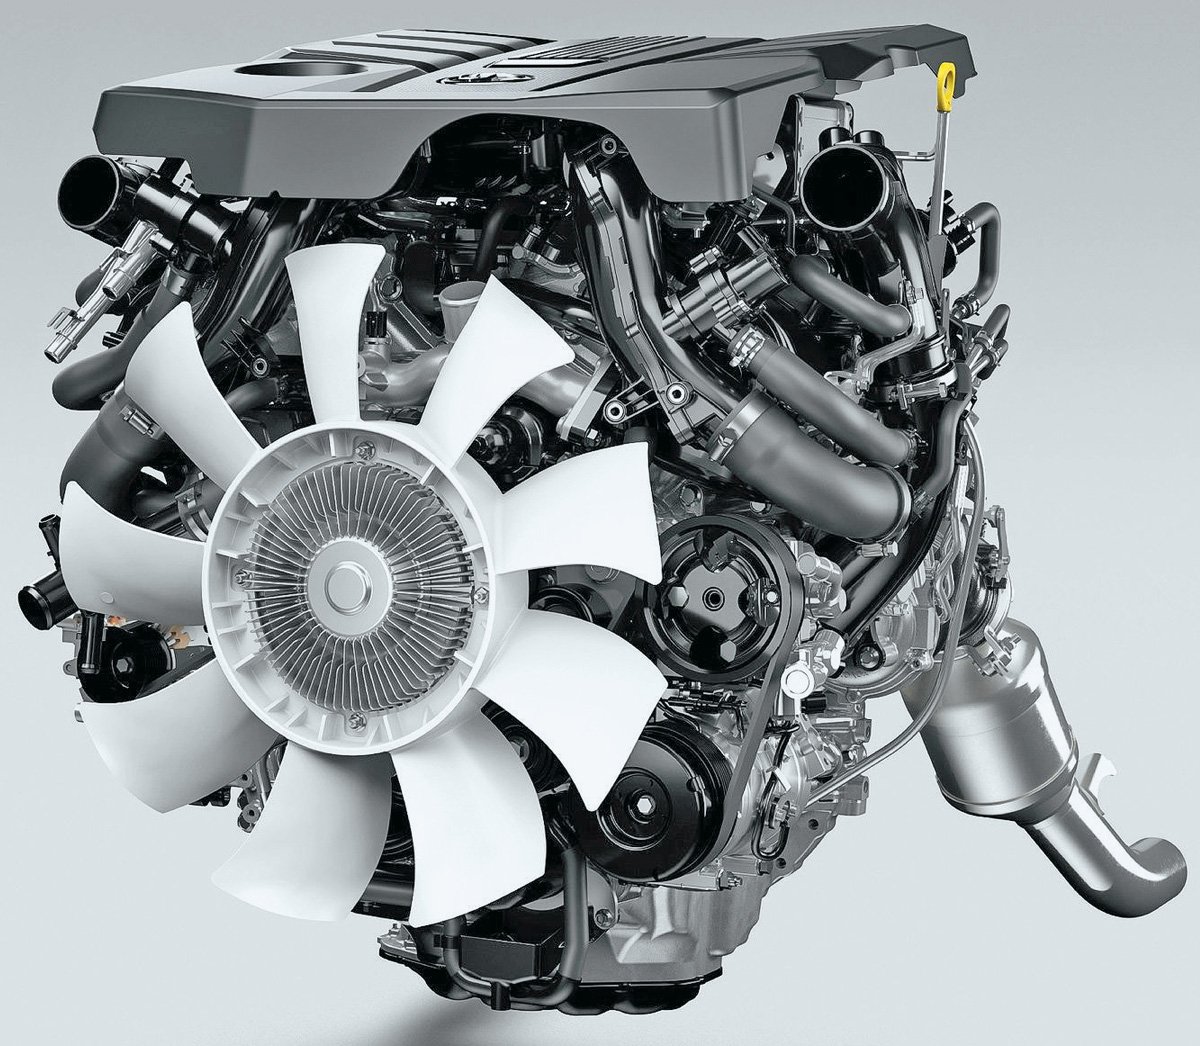 Двигатели Toyota Hilux | Масло, проблемы, ремонт, надежность